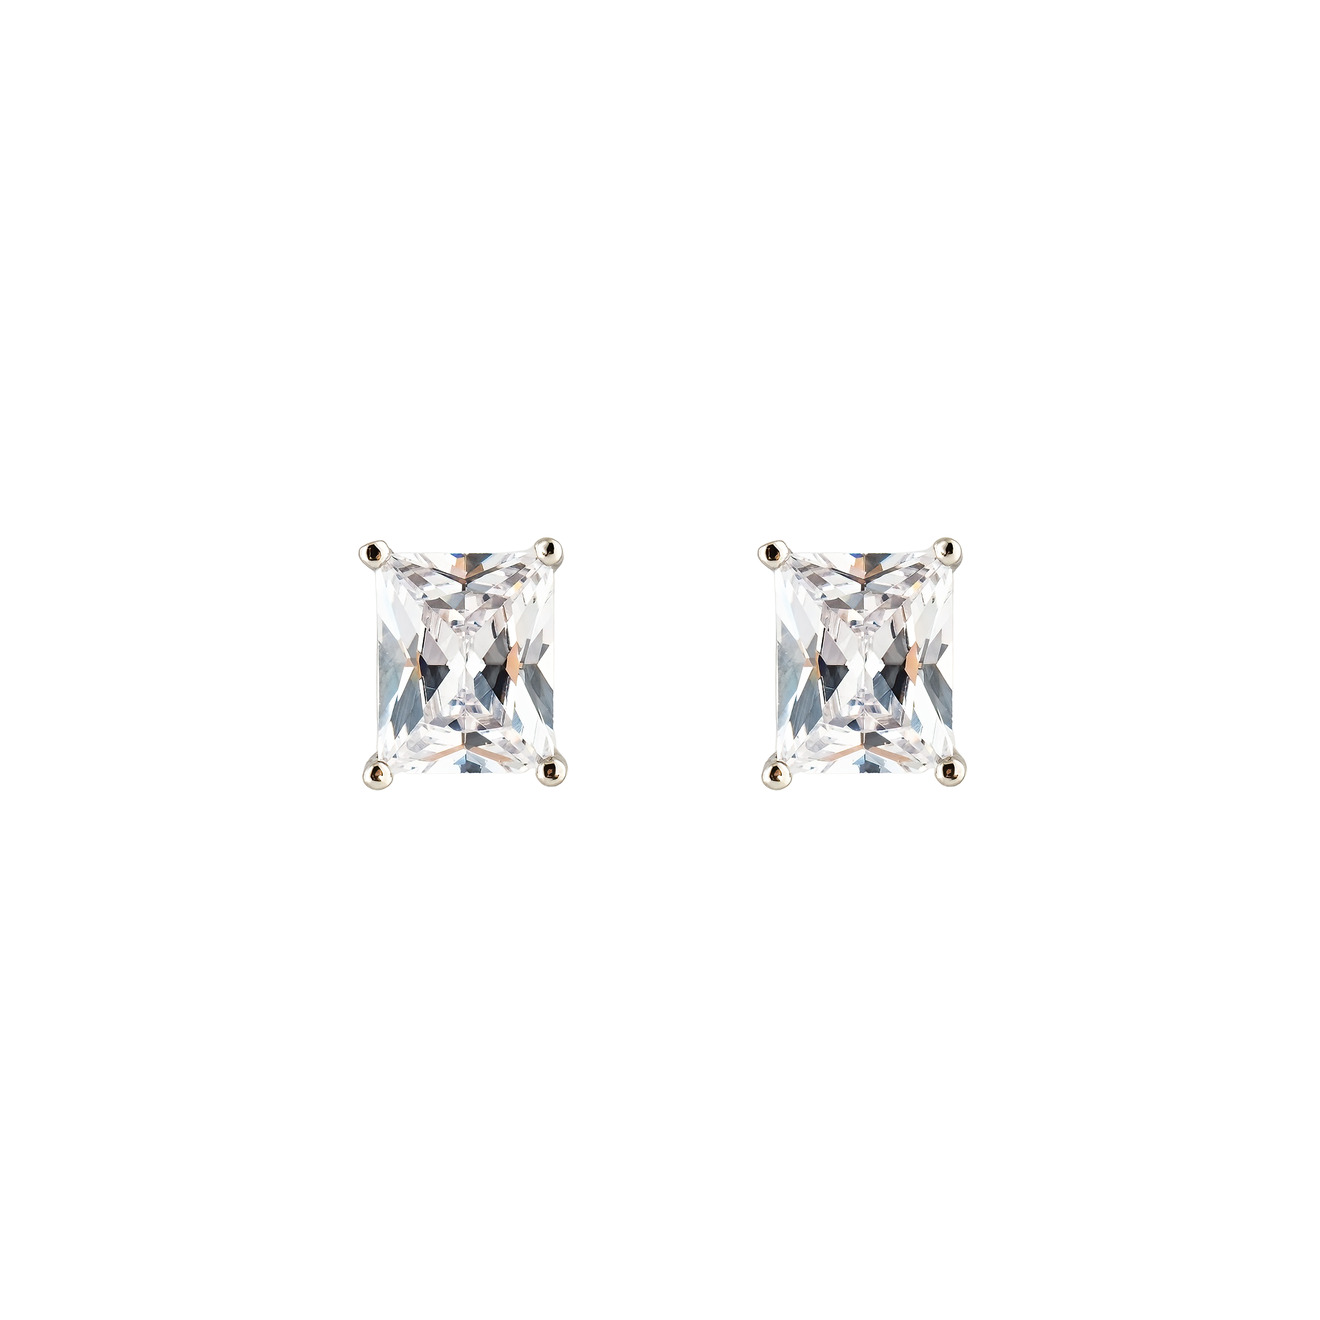 Herald Percy Серебристые серьги-пусеты с белым кристаллом herald percy серебристые серьги с квадратным голубым кристаллом и паве